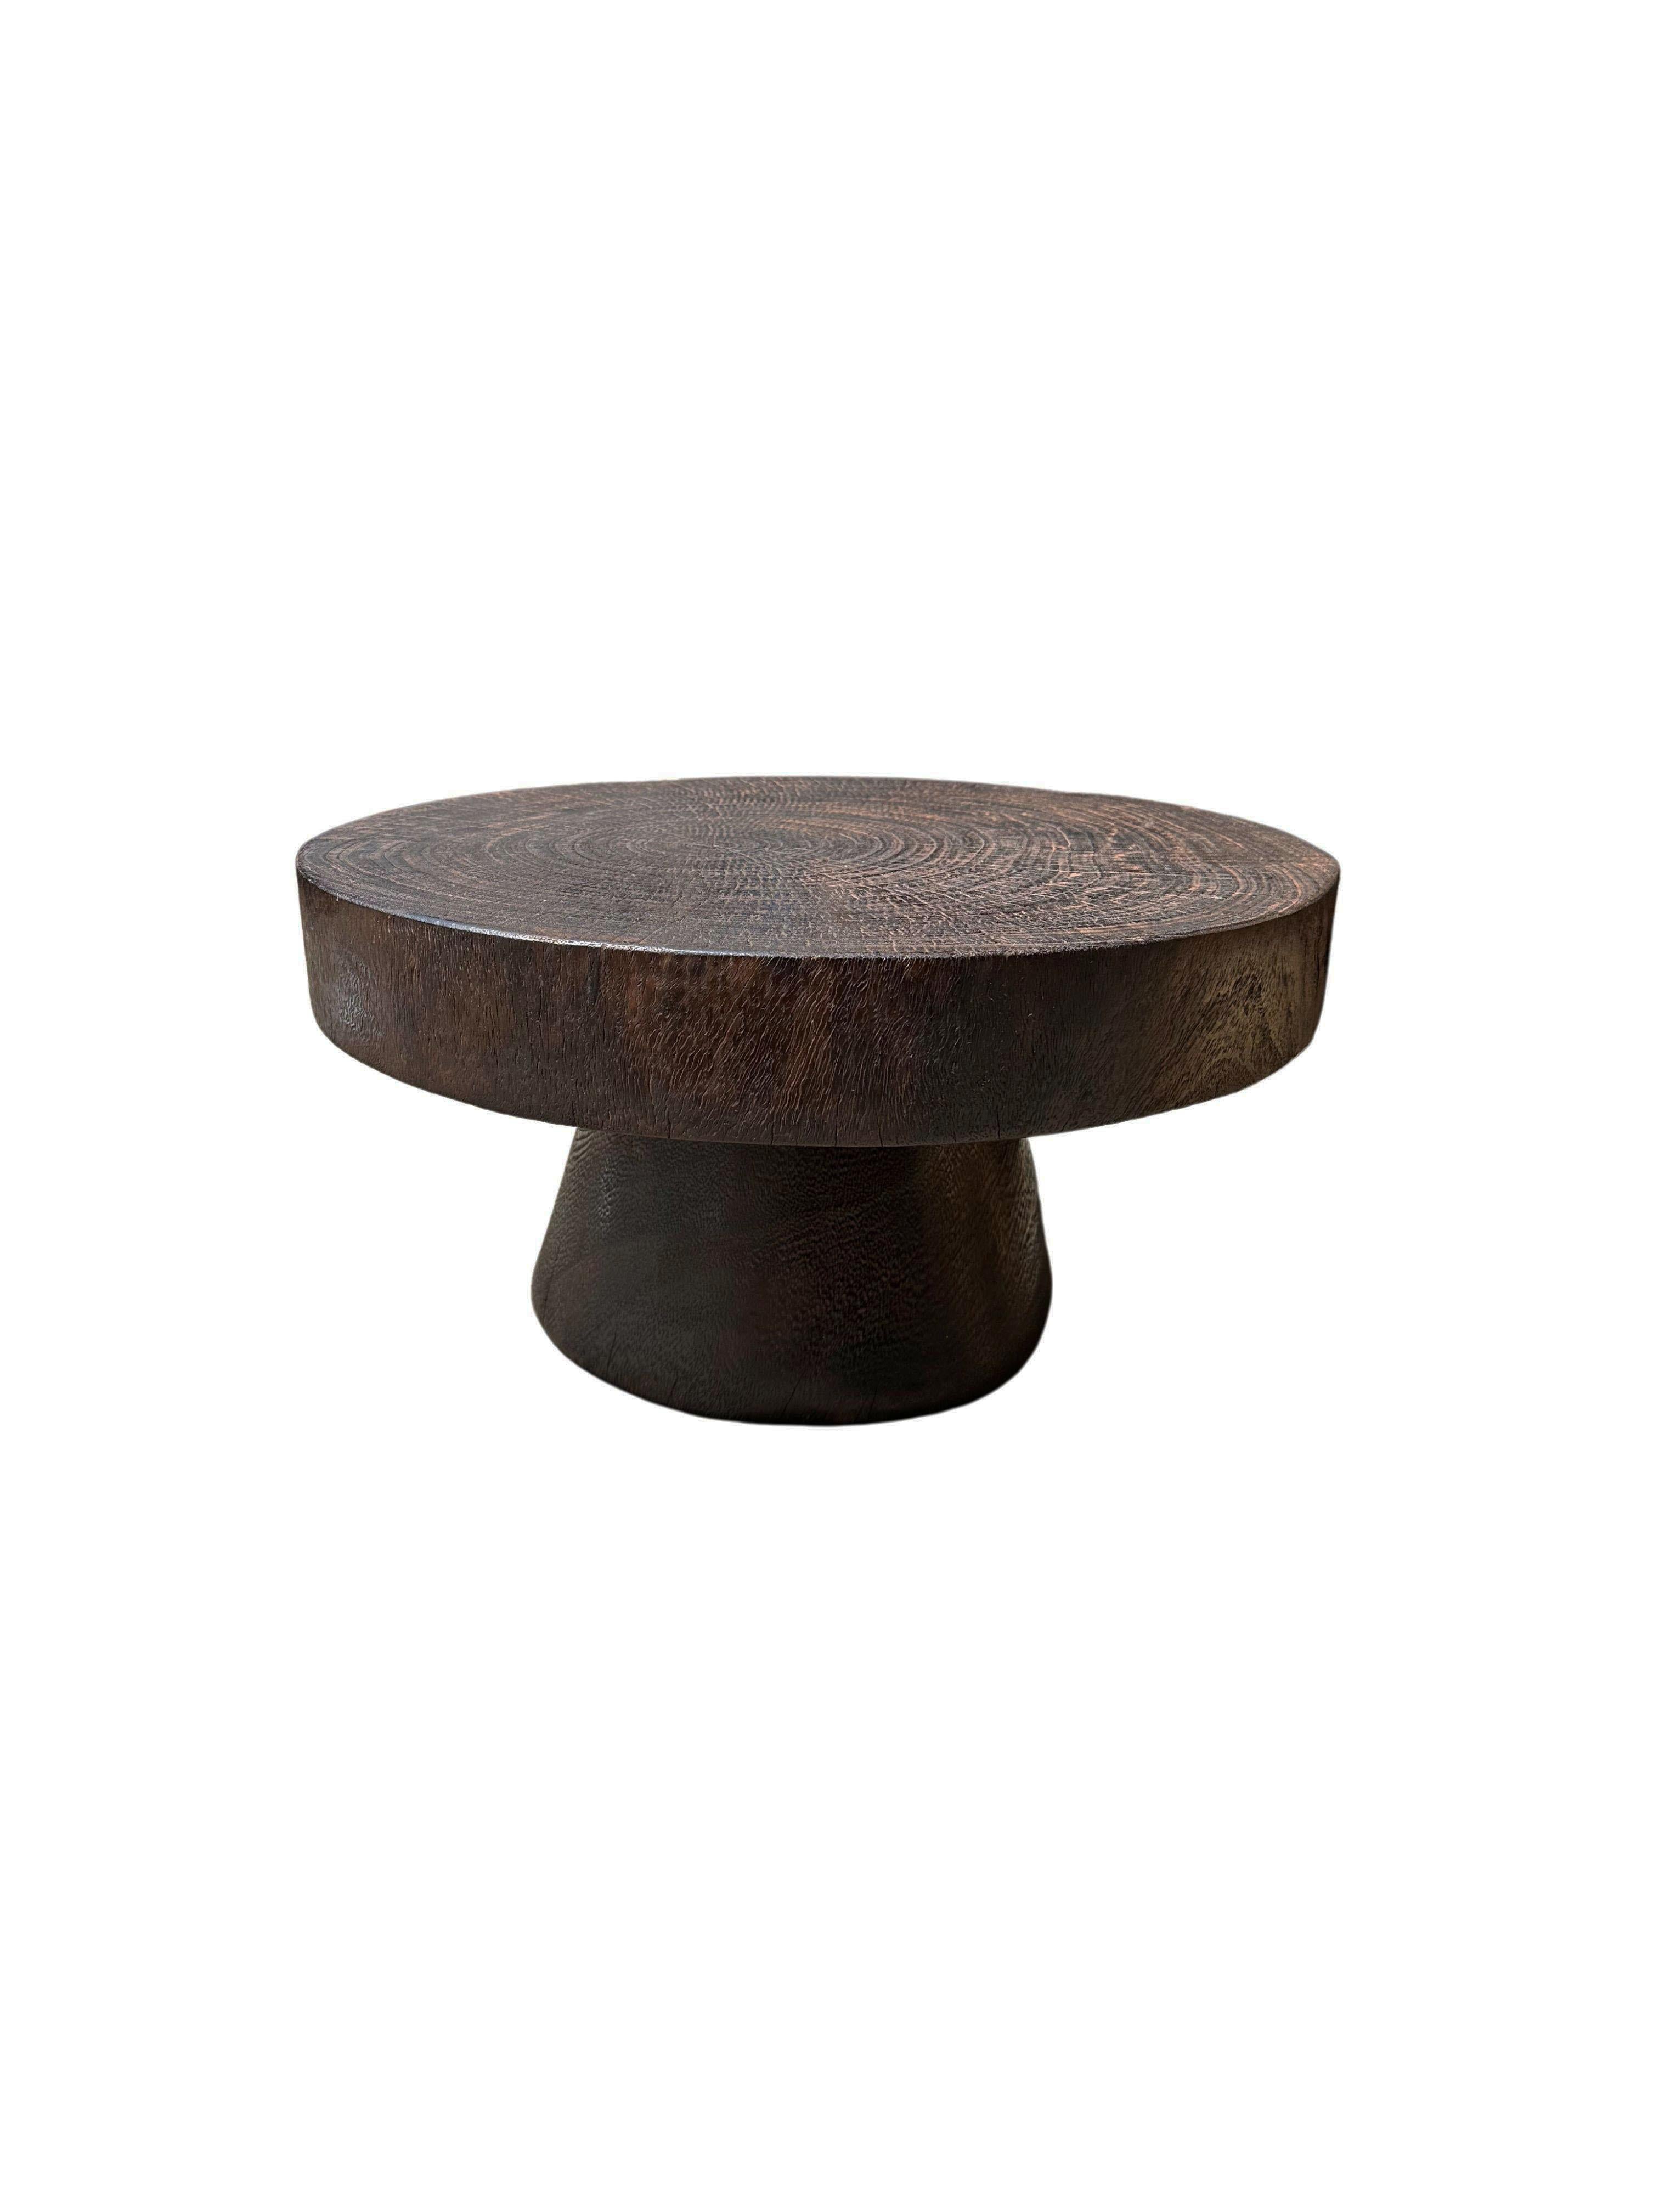 Une table d'appoint ronde merveilleusement sculpturale dotée d'une finition naturelle. Son pigment neutre et sa texture boisée subtile s'intègrent parfaitement à tous les espaces. Une pièce sculpturale unique et polyvalente qui ne manquera pas de